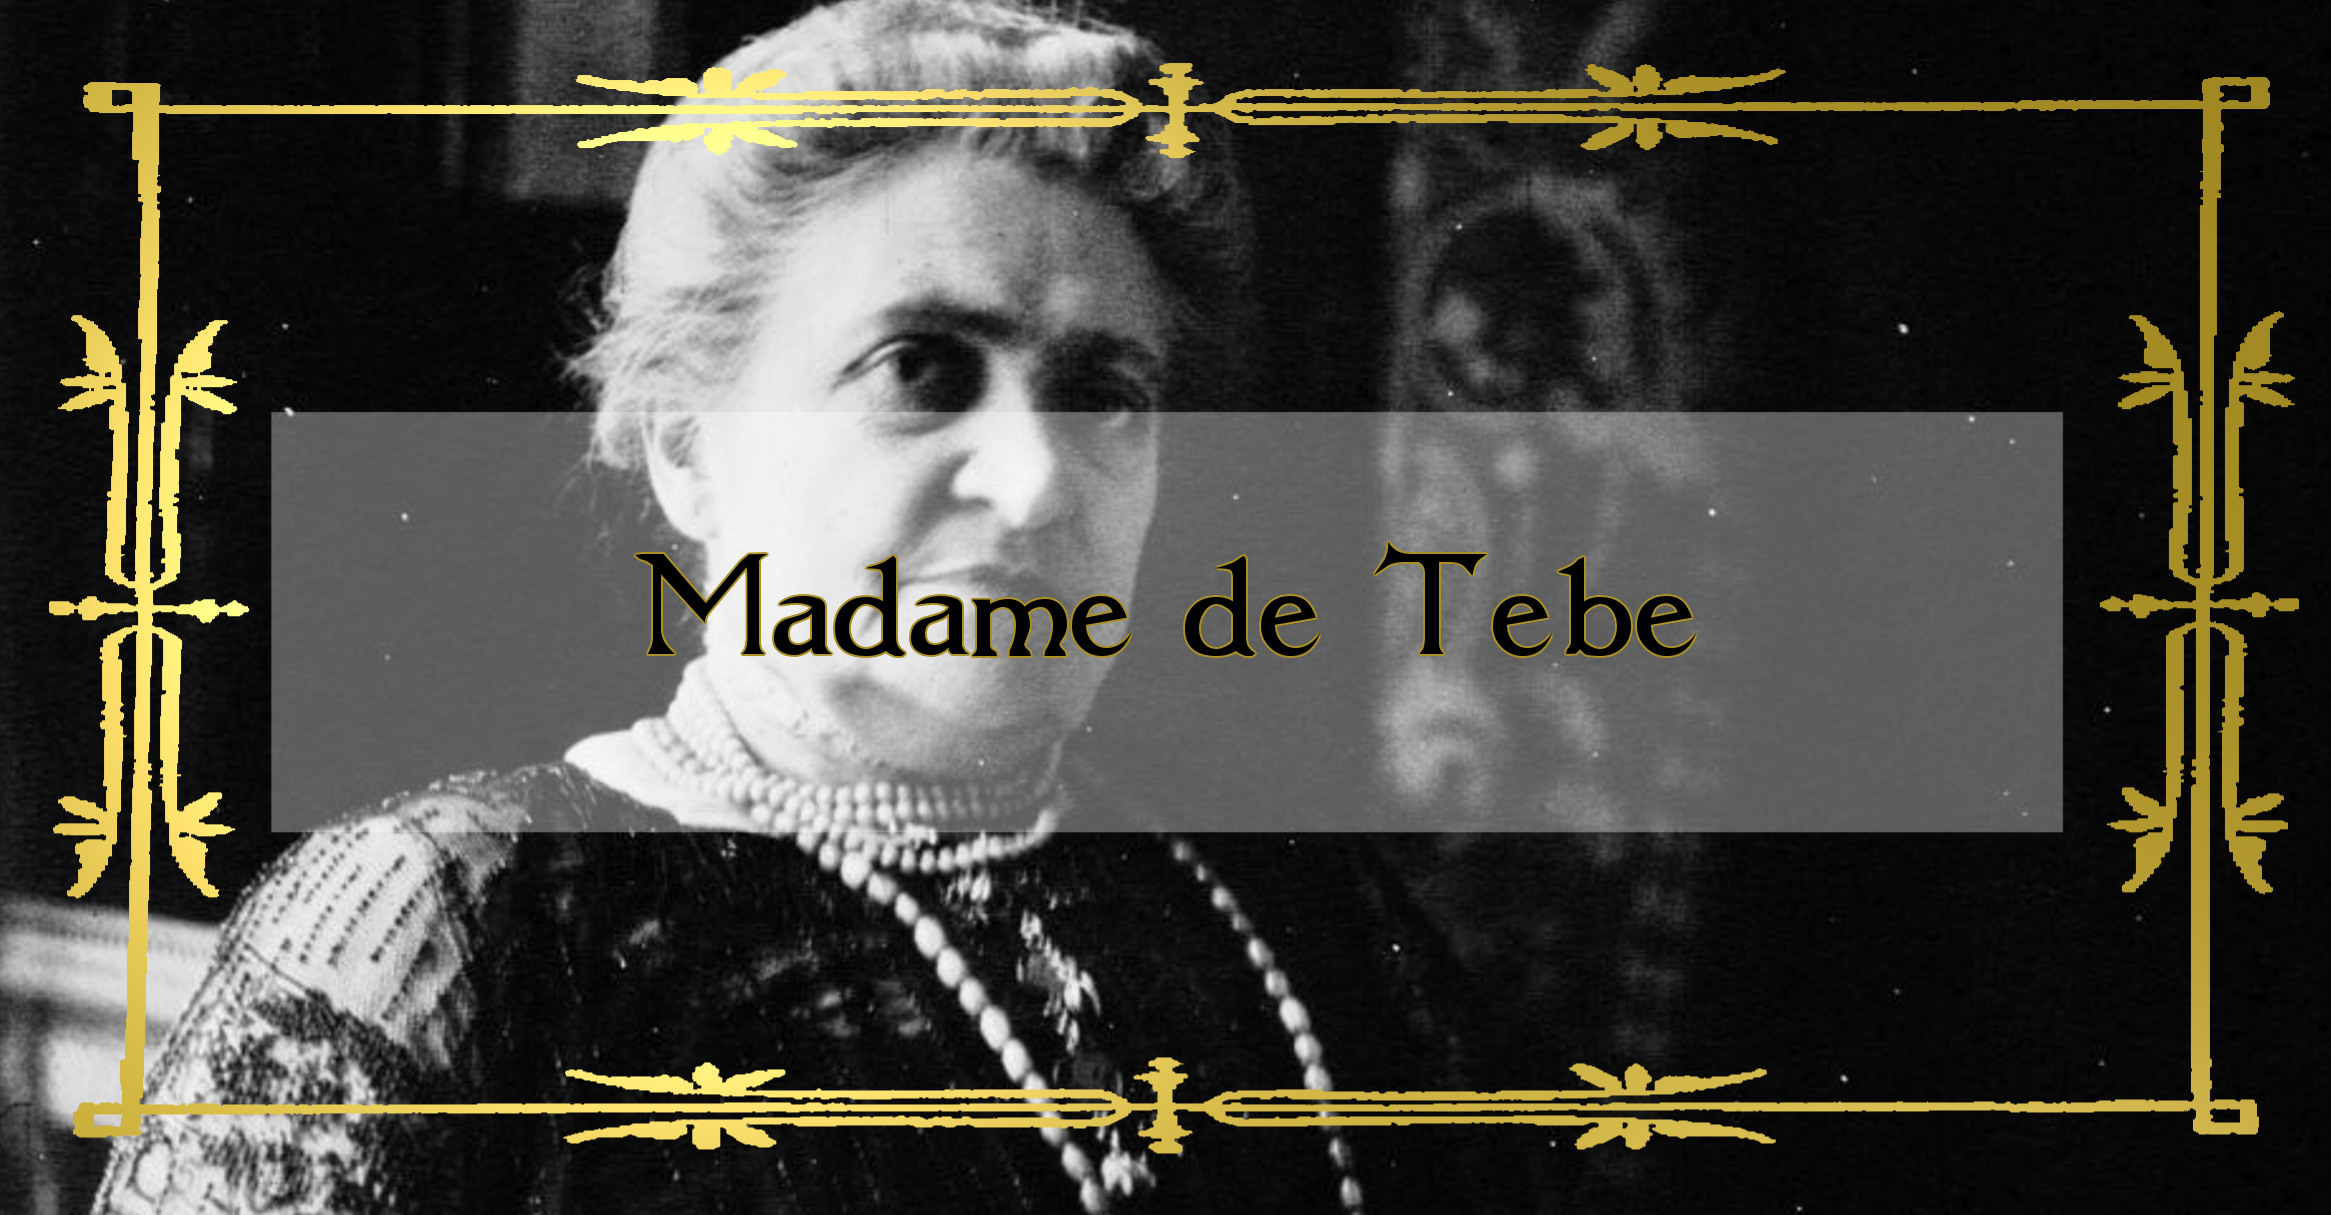 Madame de Thebe